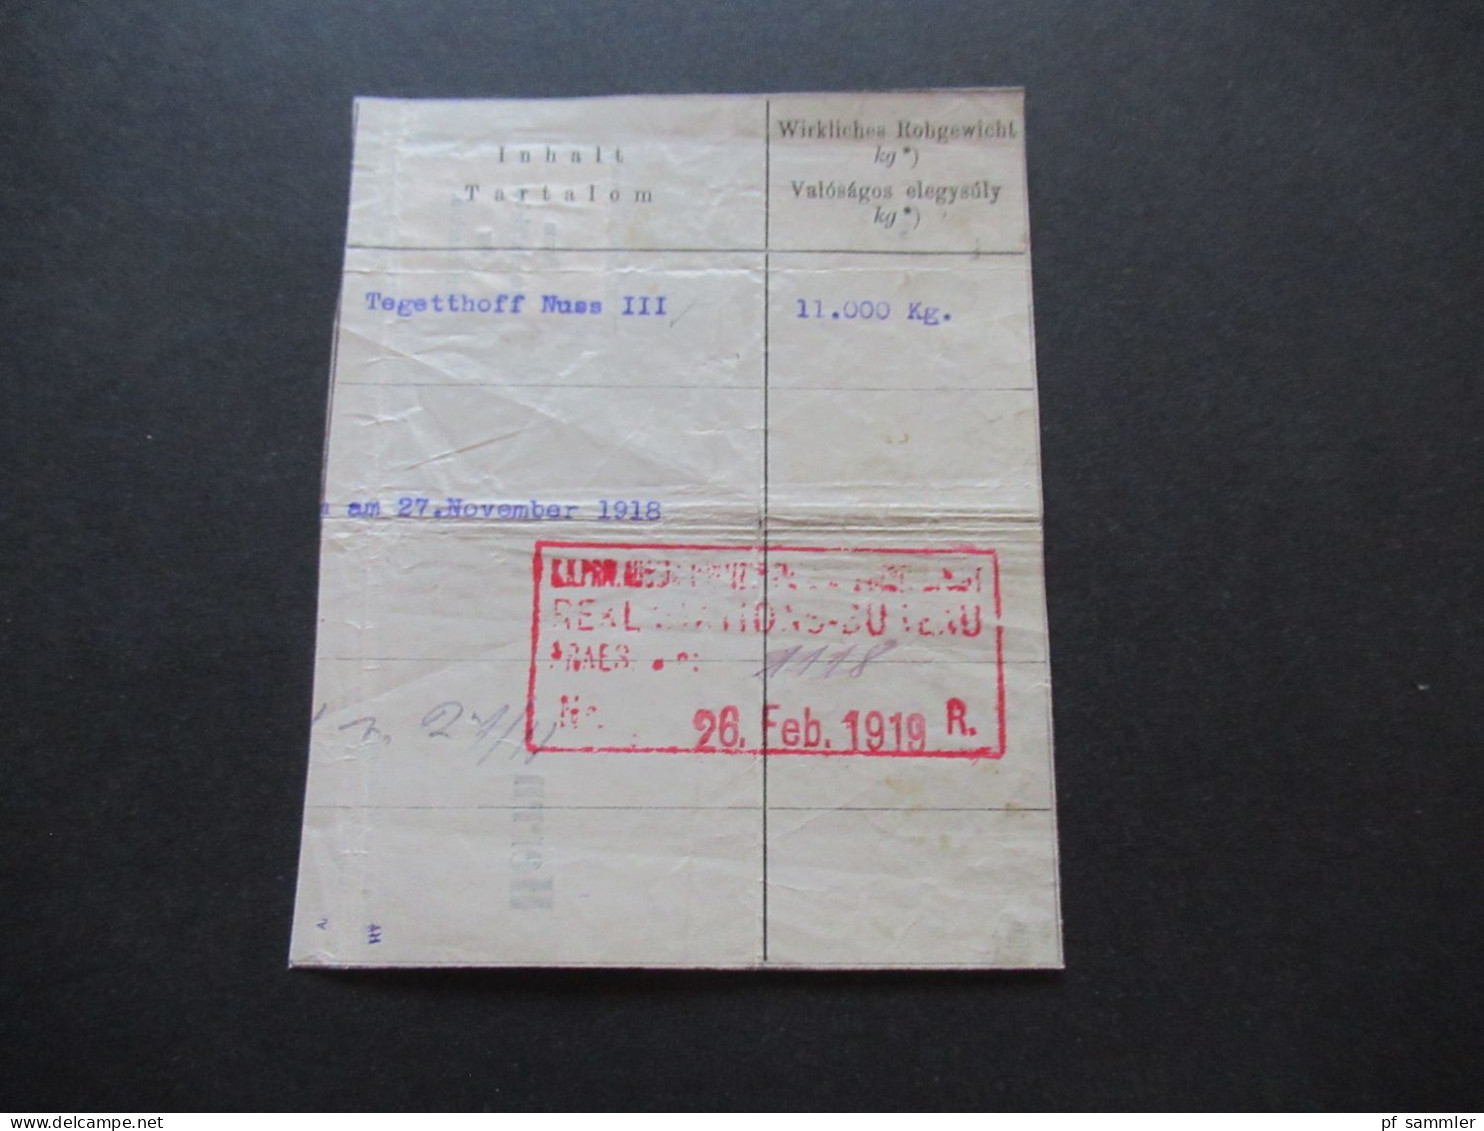 Österreich 1918 Nr.222 EF auf Briefstück violetter Stempel Lenesice / Frachtbrief ? Inhalt / Wirkliches Rohgewicht